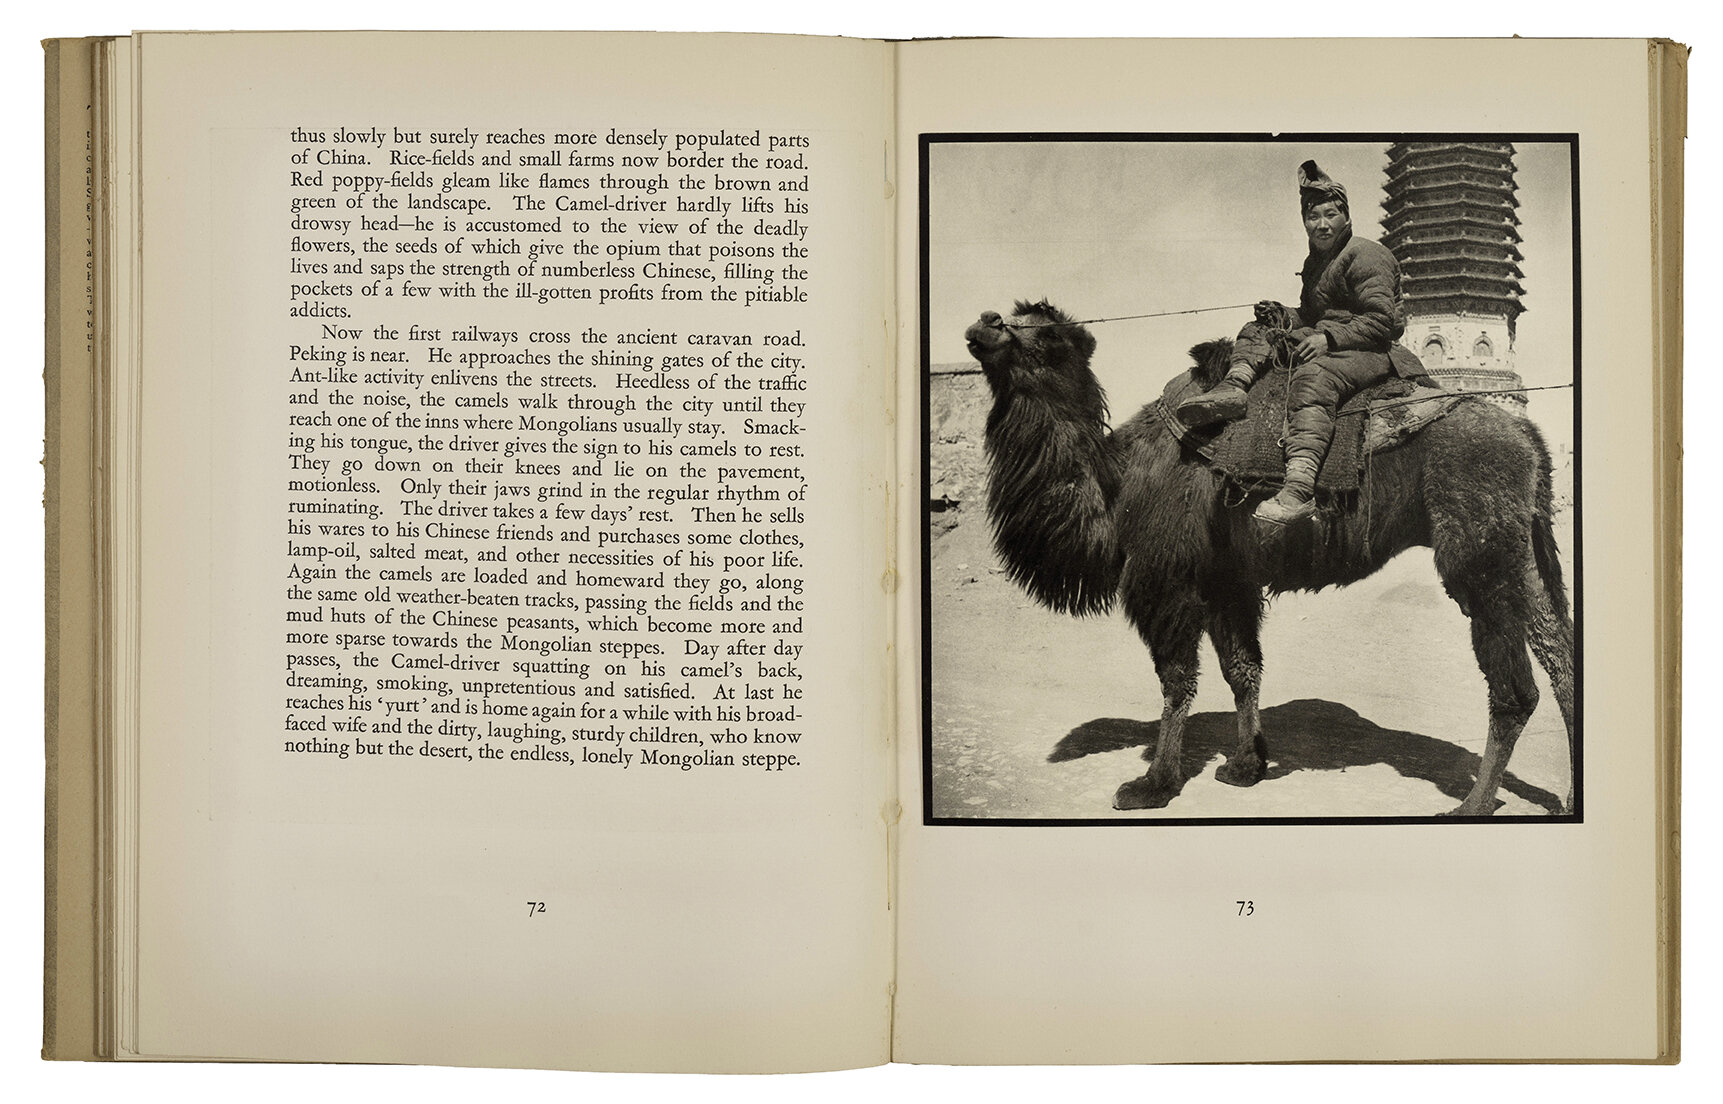 Foto13 Spread The Camel driver uit het boek People in China 1935 lowres - Ellen Thorbecke |  - Ellen Thorbecke